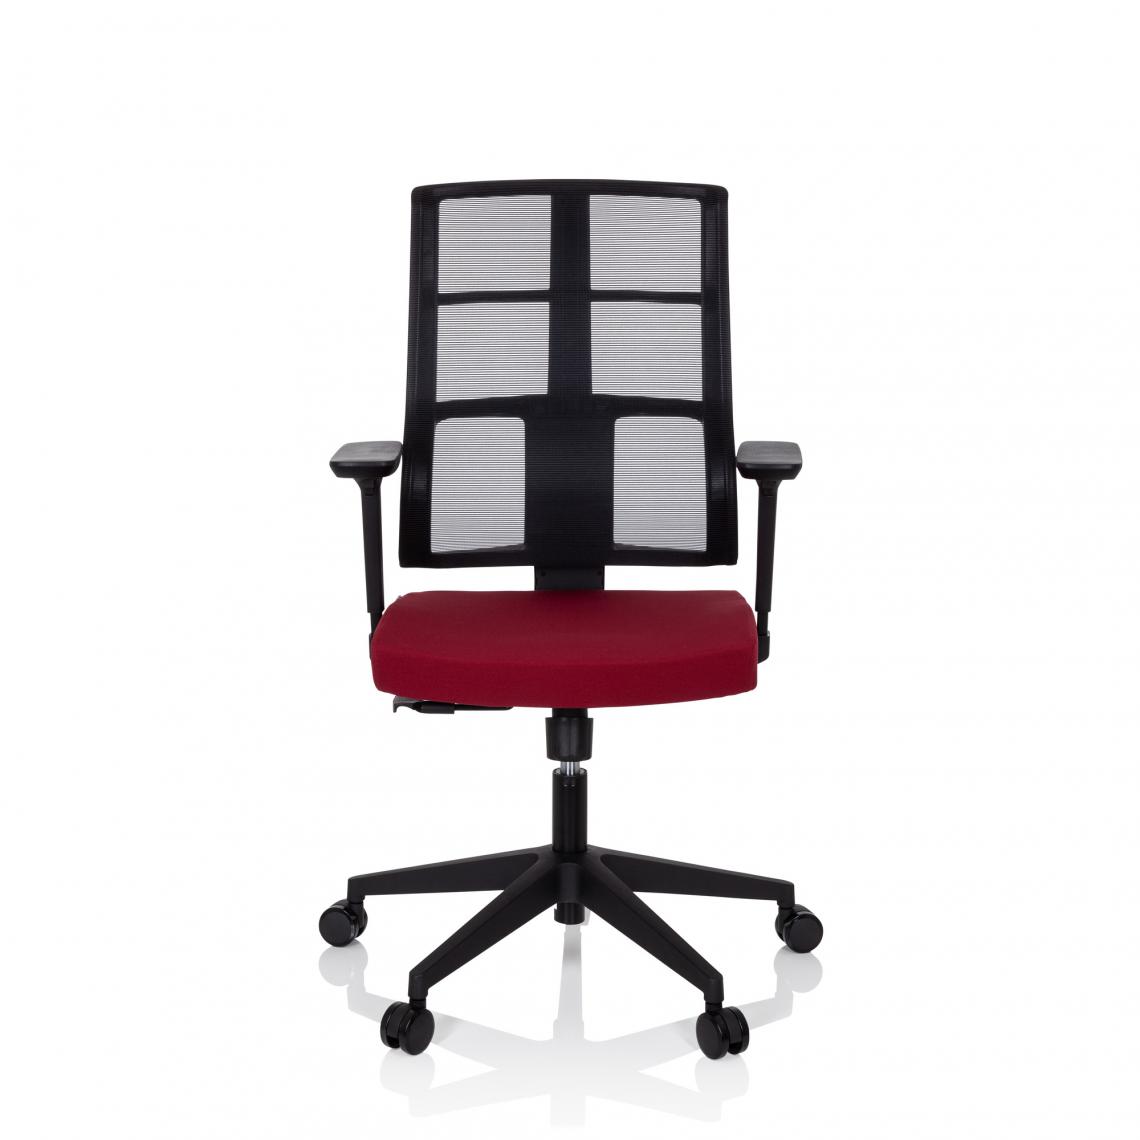 Hjh Office - Chaise de bureau / chaise pivotante SPINIO maille / tissu noir / rouge rubis hjh OFFICE - Bureaux